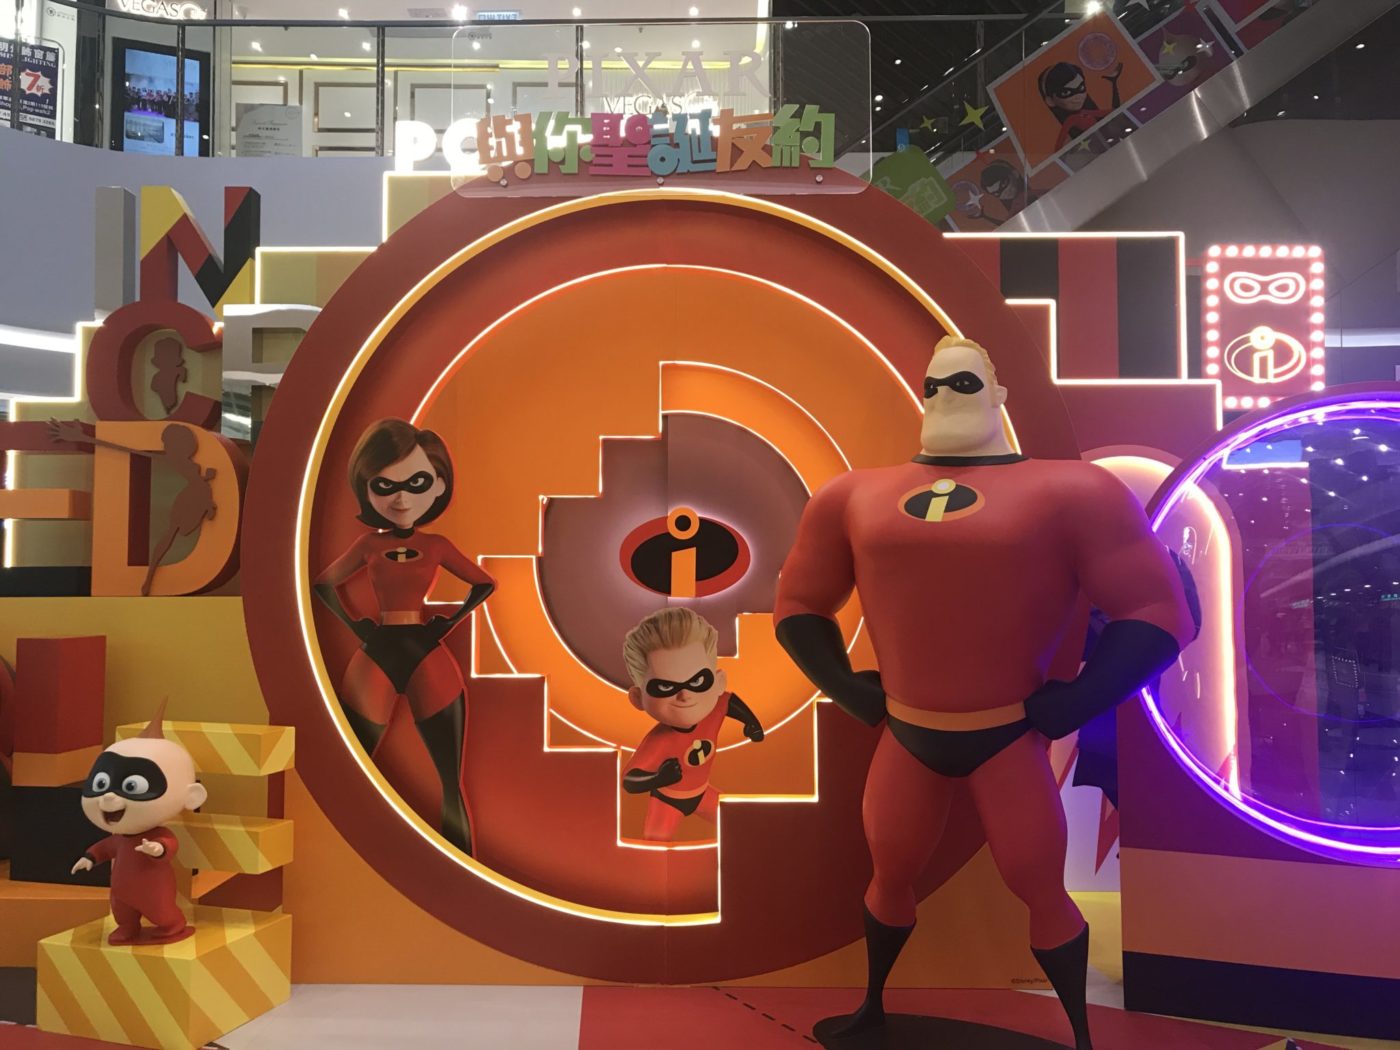 香港好去處 聖誕好去處 聖誕必去 將軍澳 PopWalk Pixar 反斗奇兵 超人特工隊 Toy Story